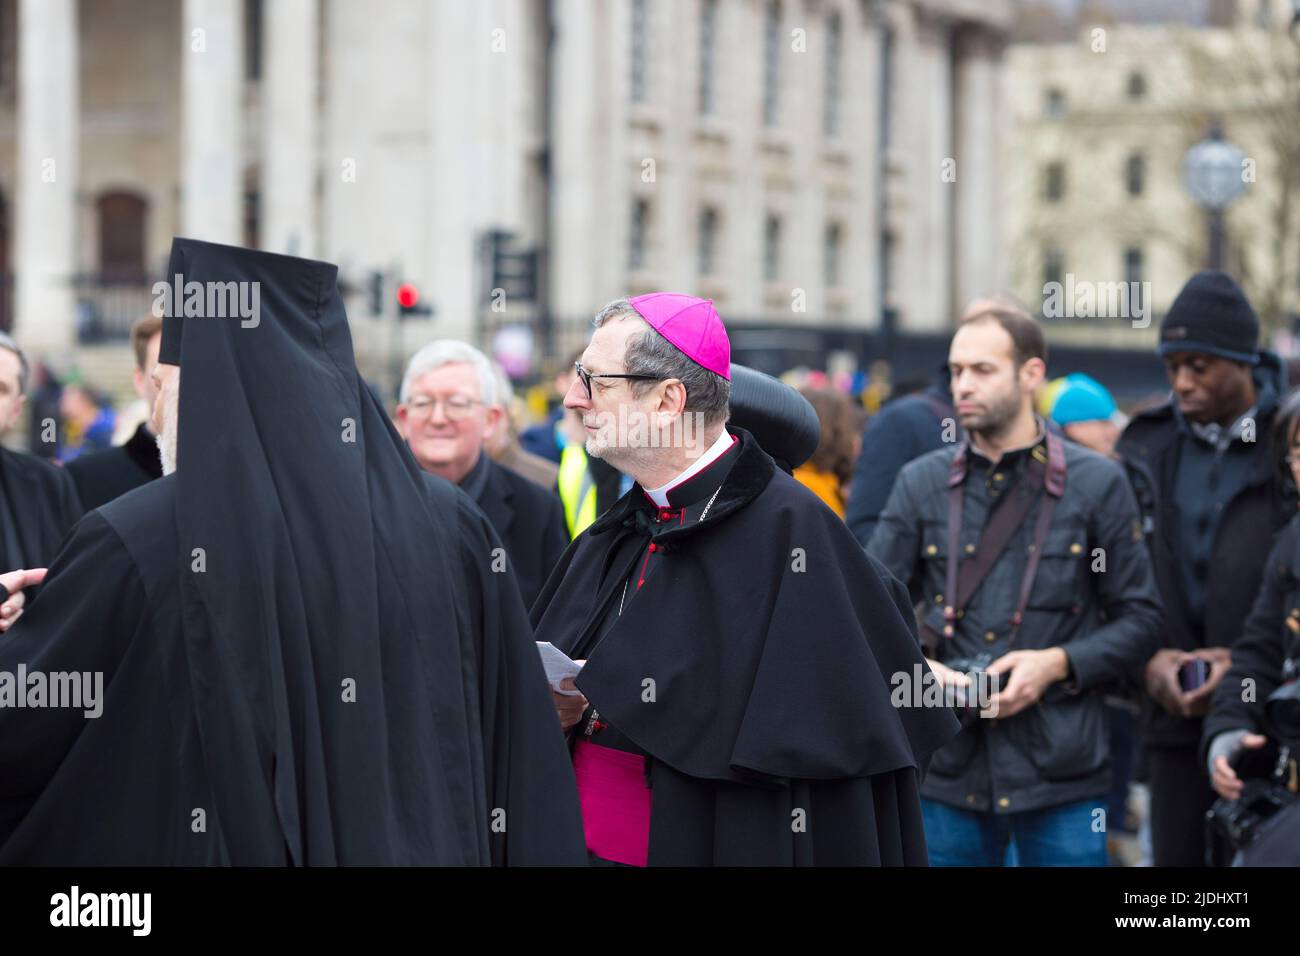 Die Teilnehmer versammeln sich während eines Protestes der Ukraine gegen die jüngste Invasion Russlands in die Ukraine auf dem Trafalgar Square in London. Stockfoto